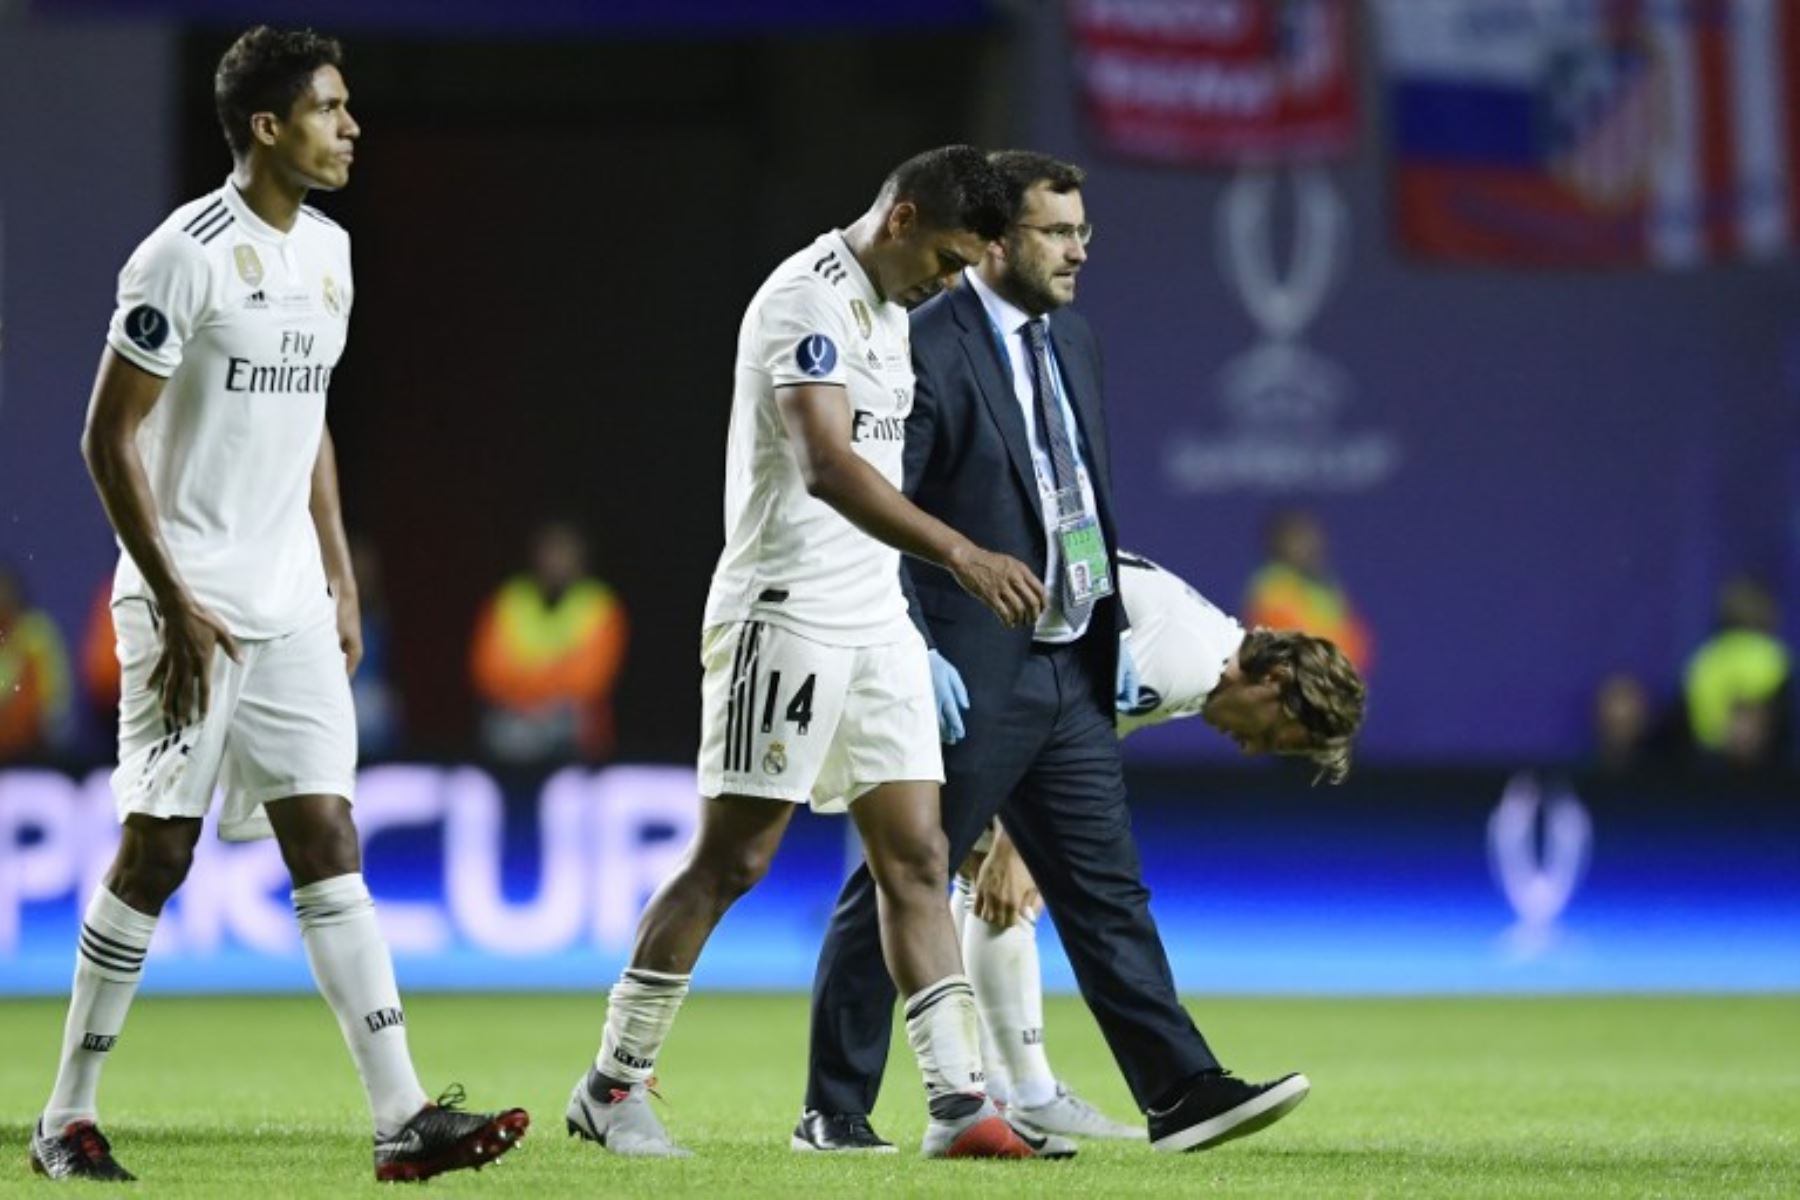 Los errores defensivos alarman a la afición del Real Madrid, que al parecer extrañan a Cristiano Ronaldo